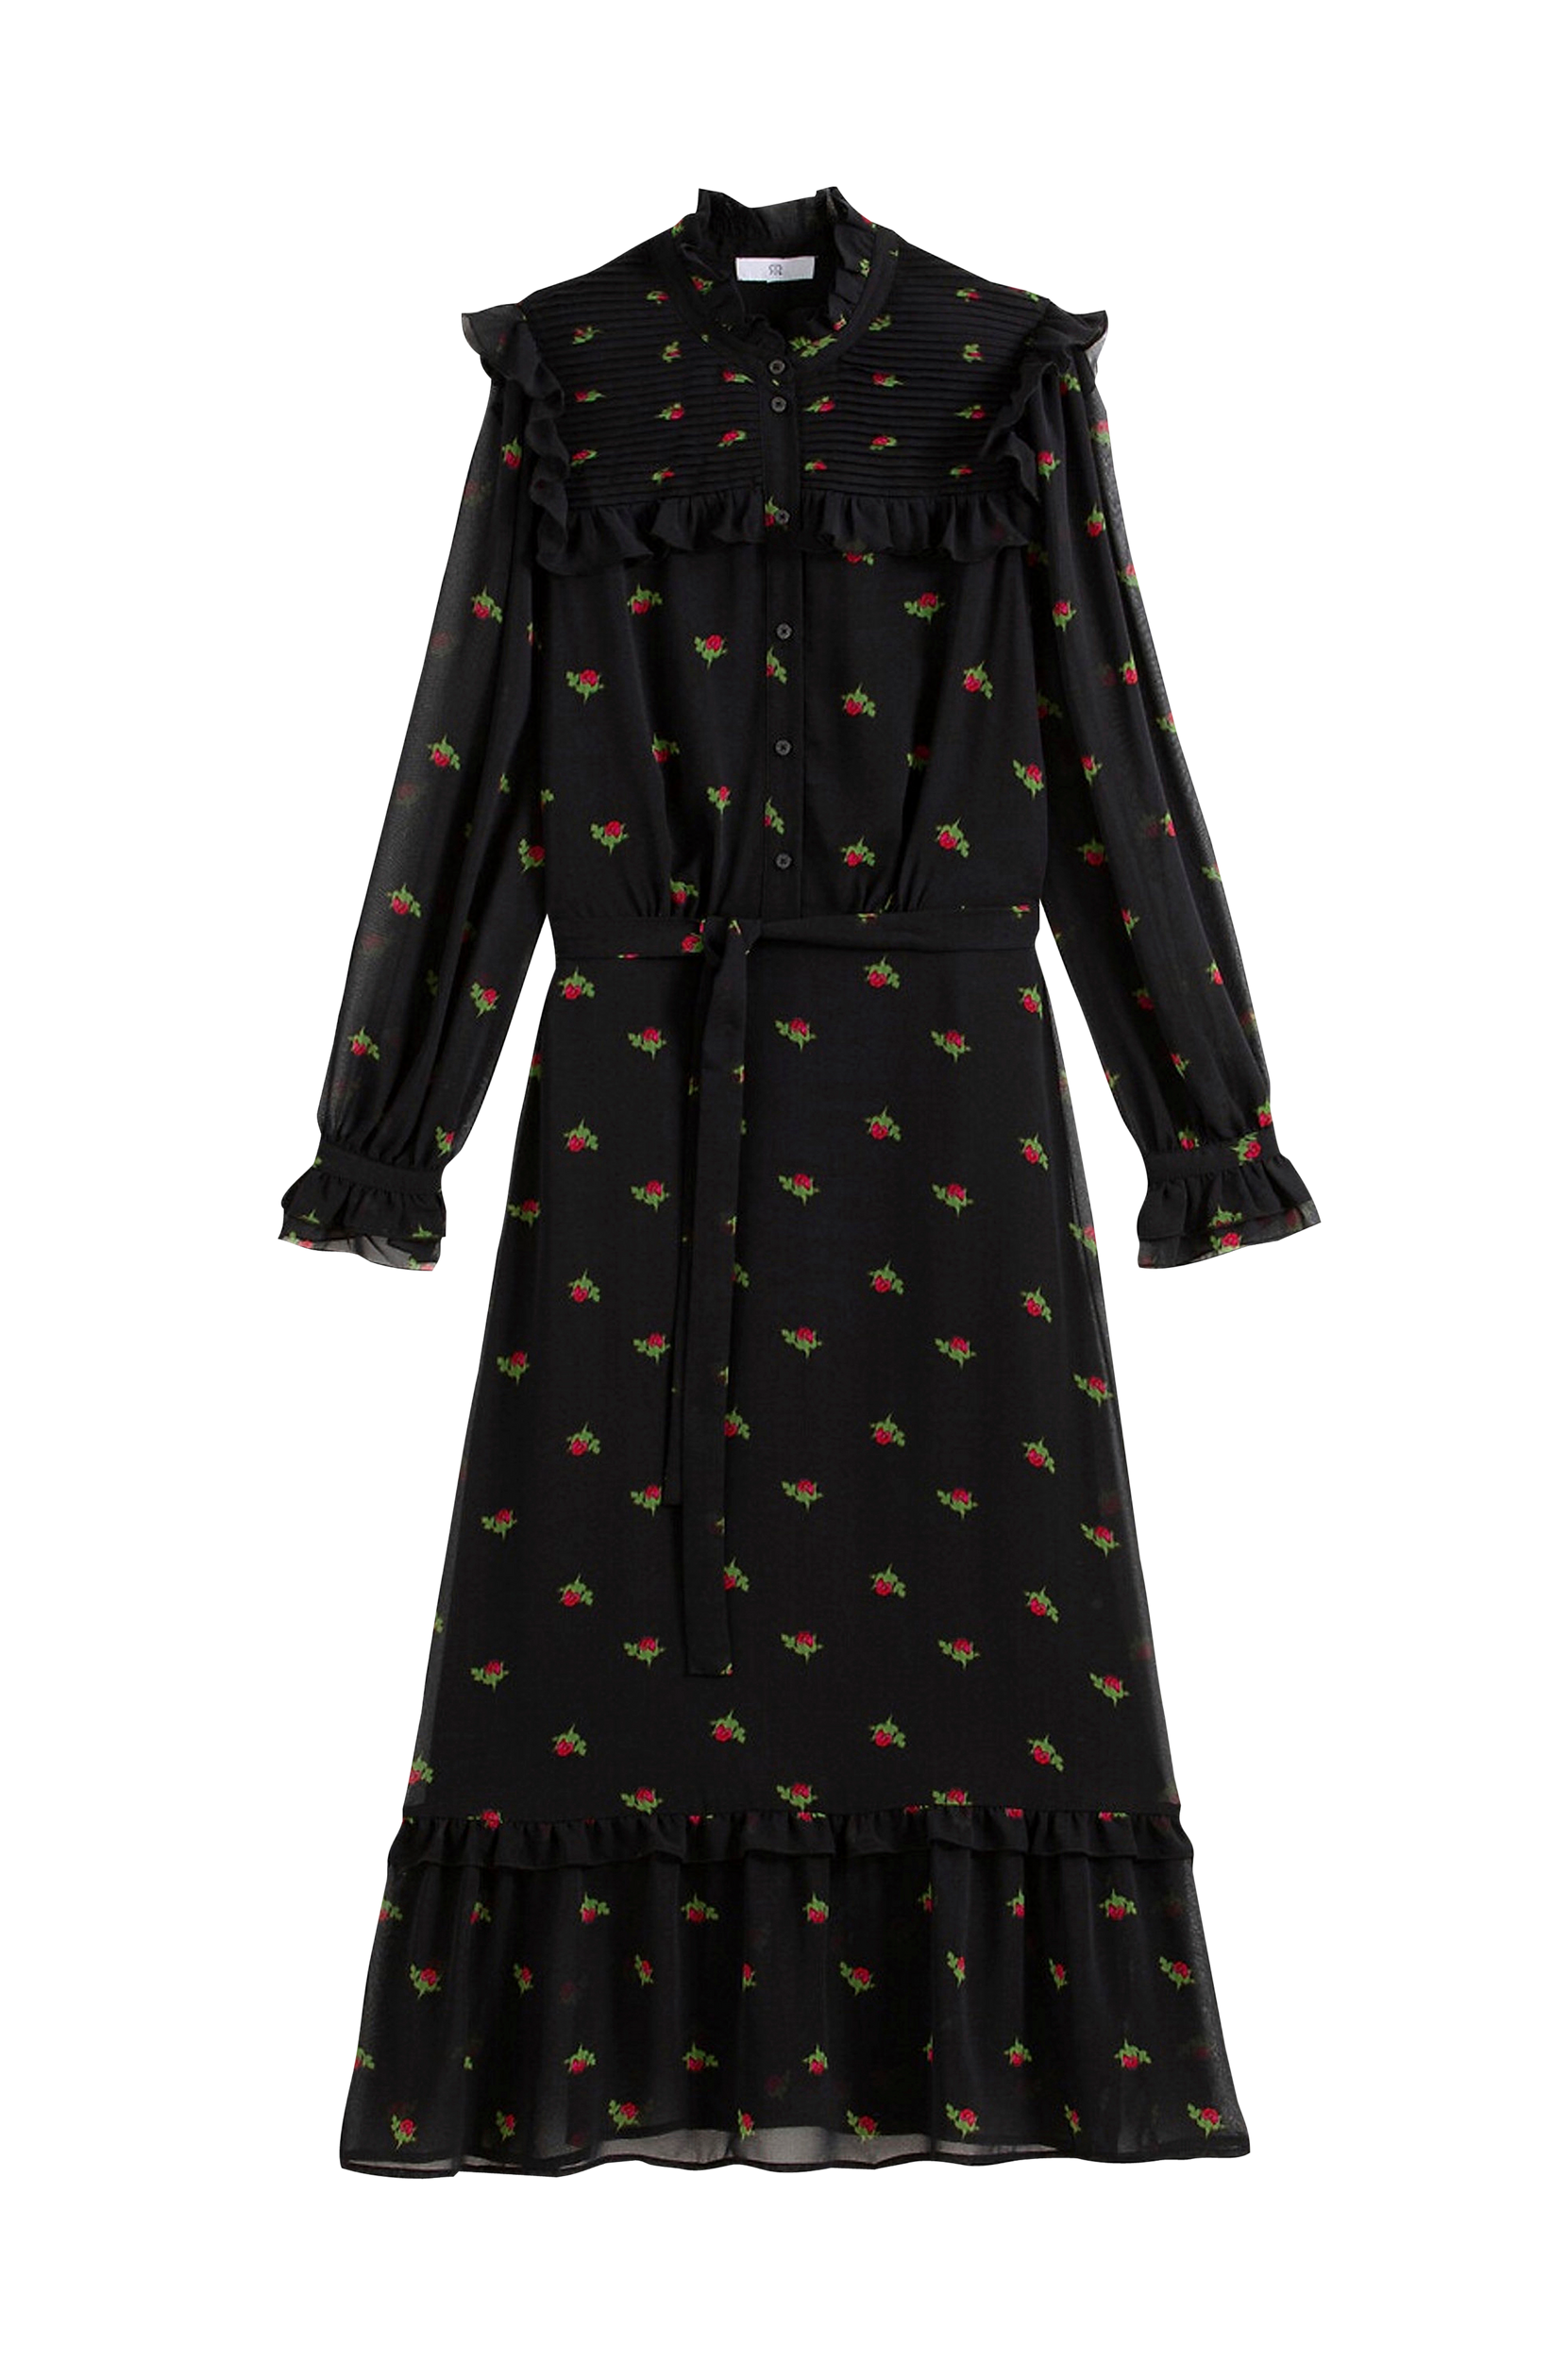 La Redoute - Lång, mönstrad klänning med ståkrage och lång ärm - Svart